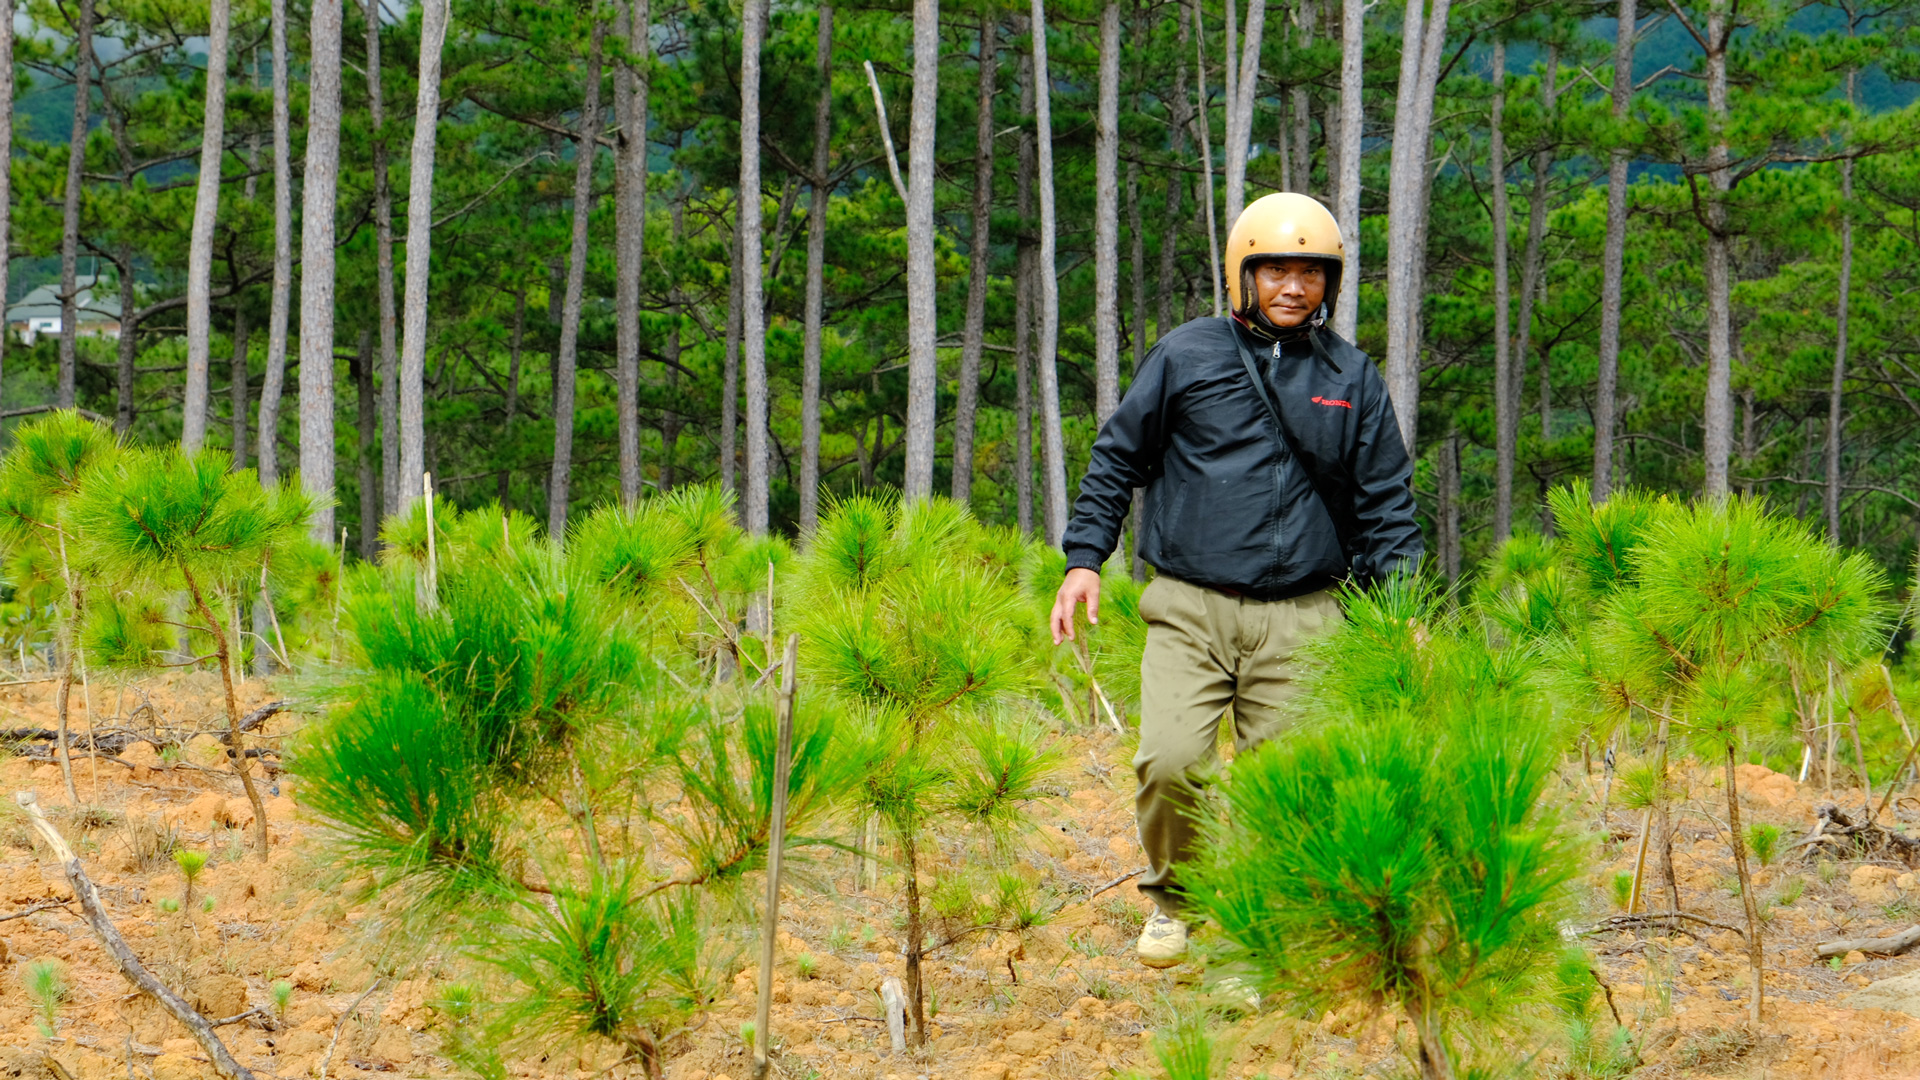 Ðạ Nhim: Tăng cường công tác quản lý, bảo vệ rừng